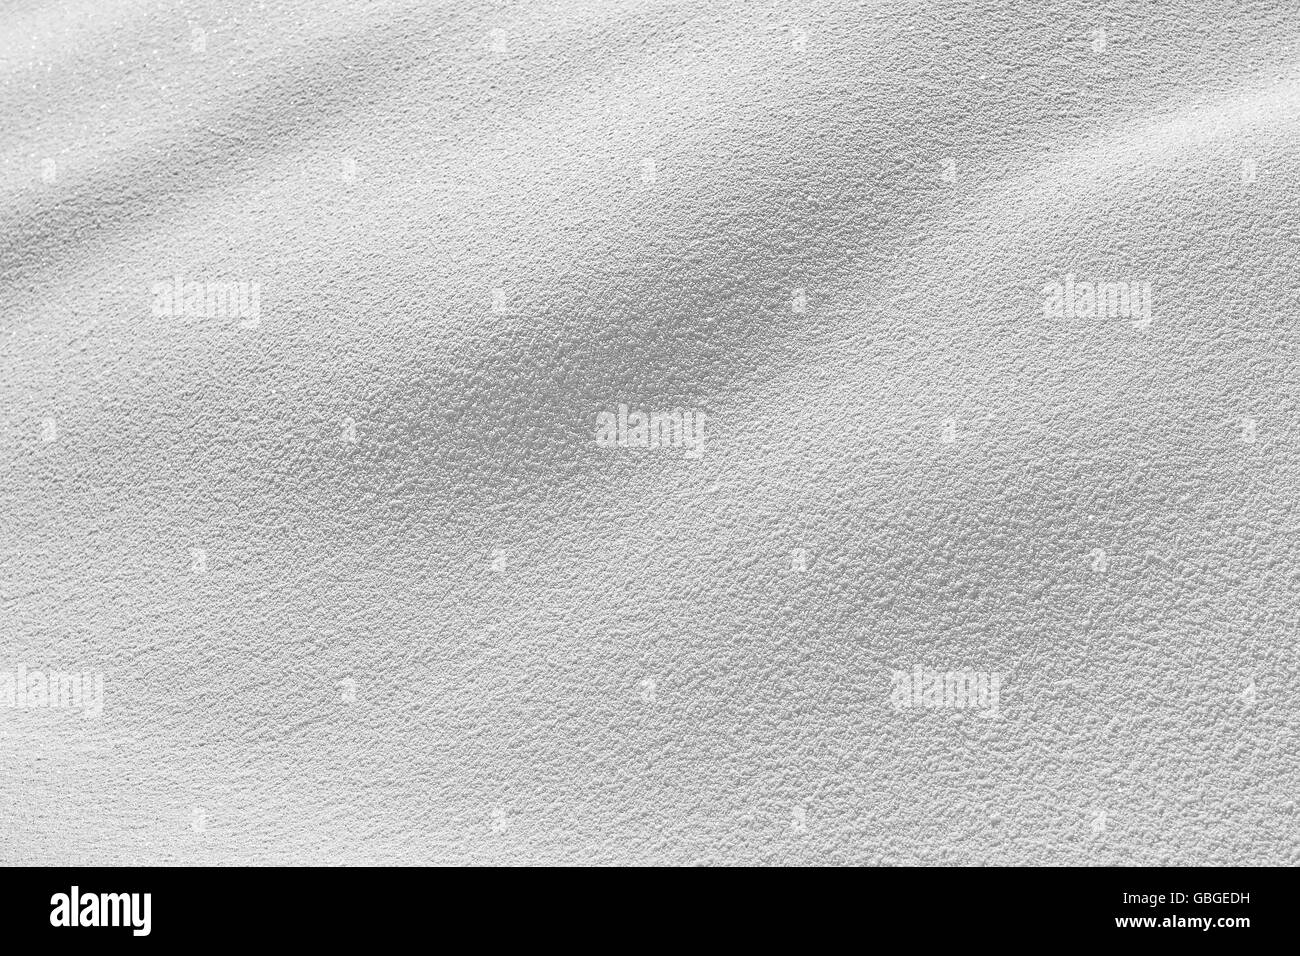 white snow background texture detail Stock Photo